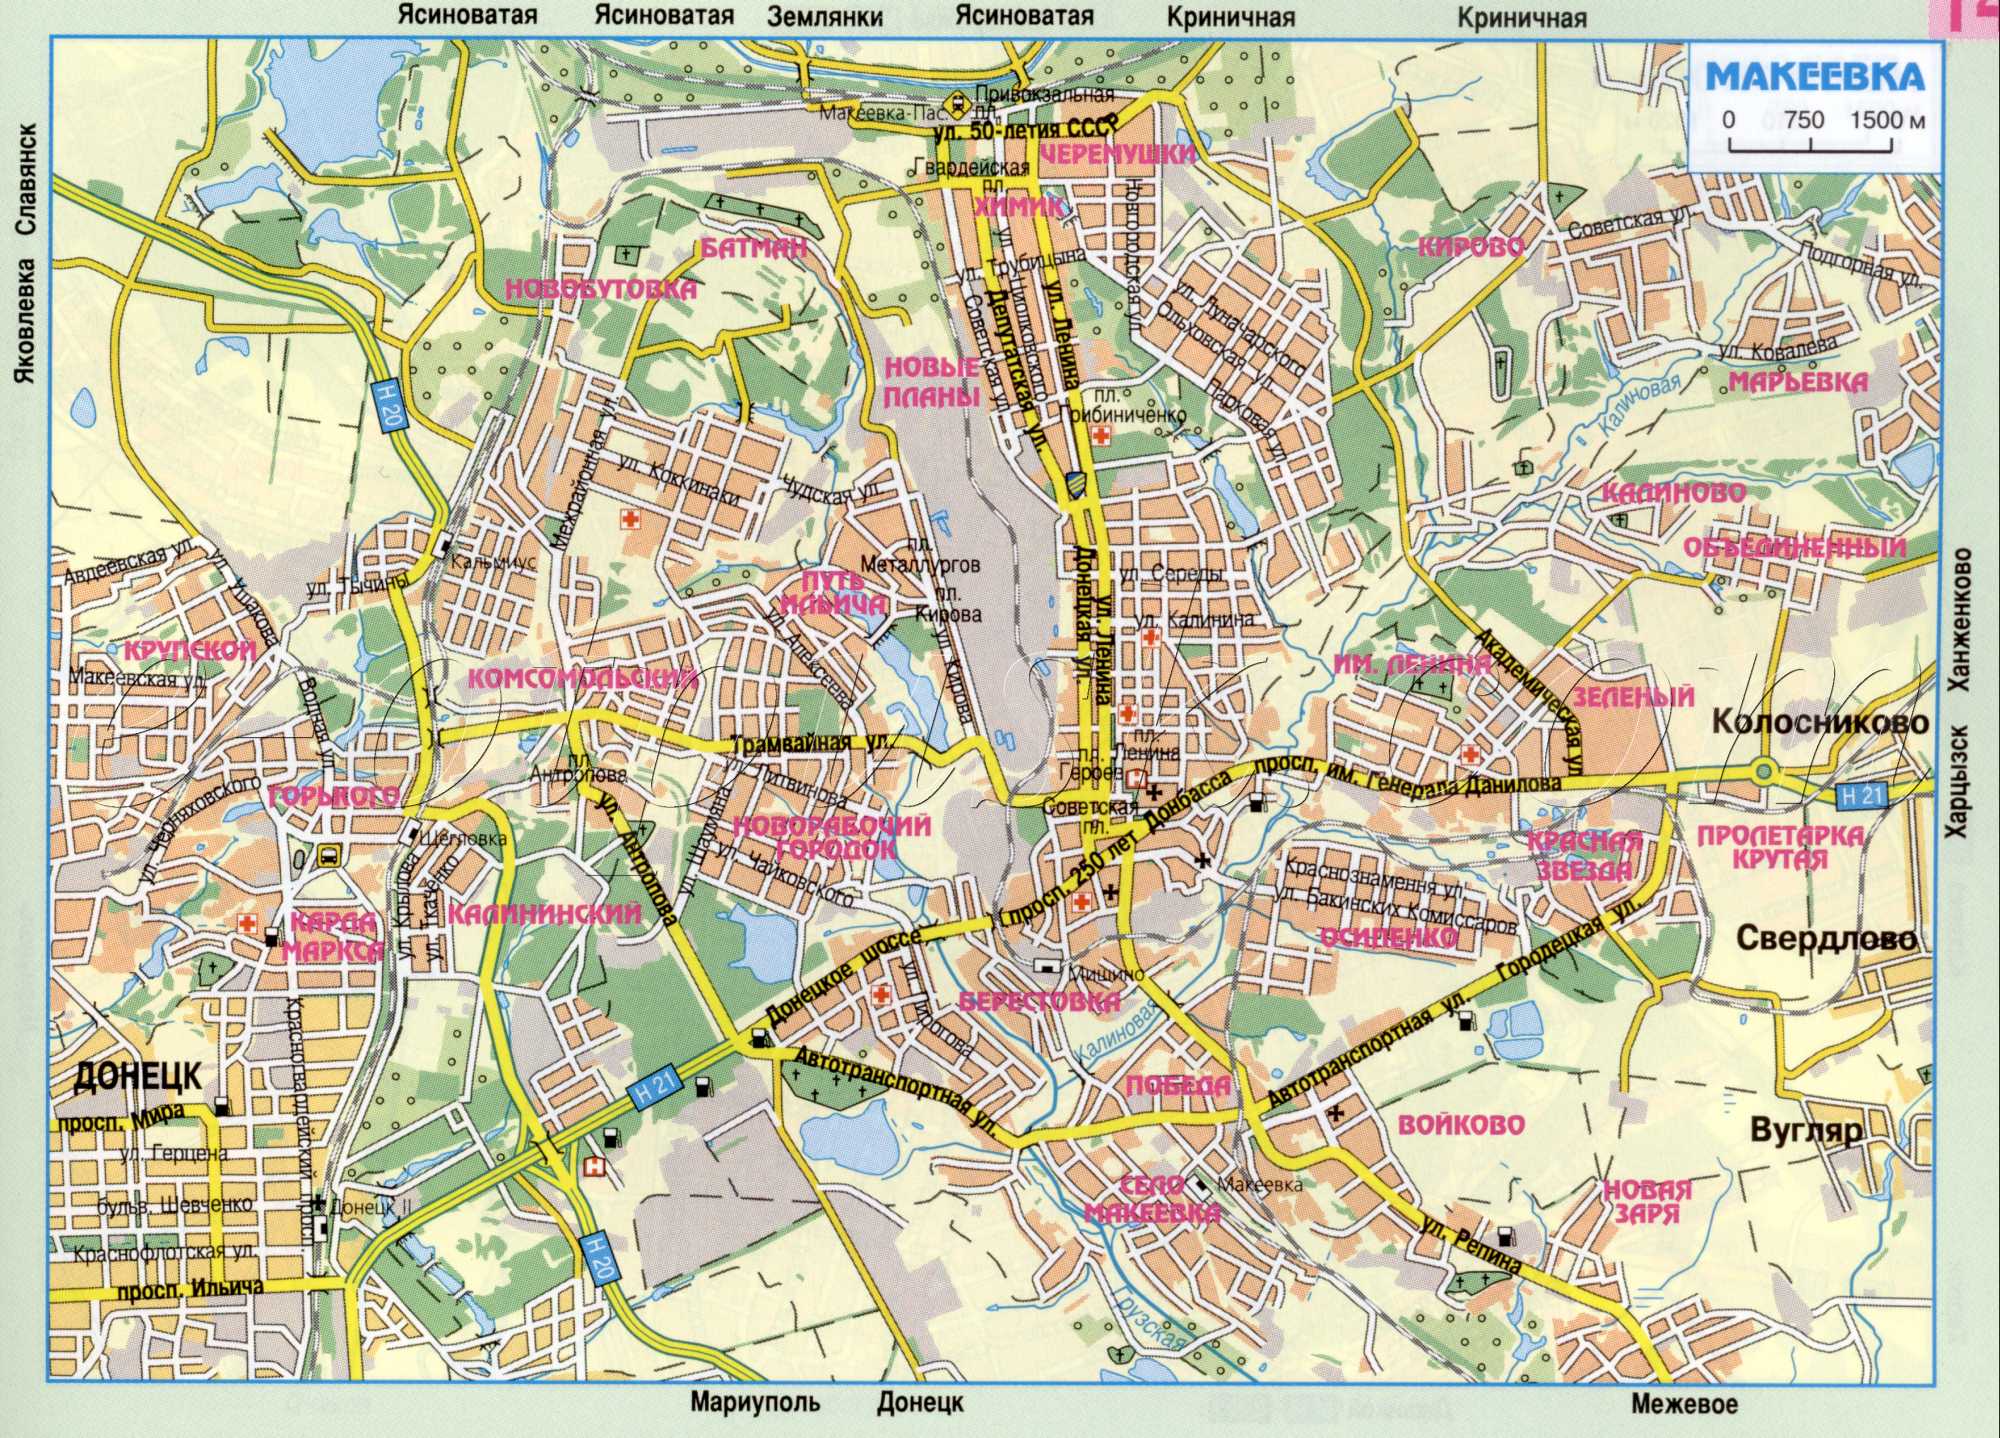 Карта Макіївки (основні авто дороги міста Макіївка Донецької обл в масштабі 1см: 750м). завантажити безкоштовно